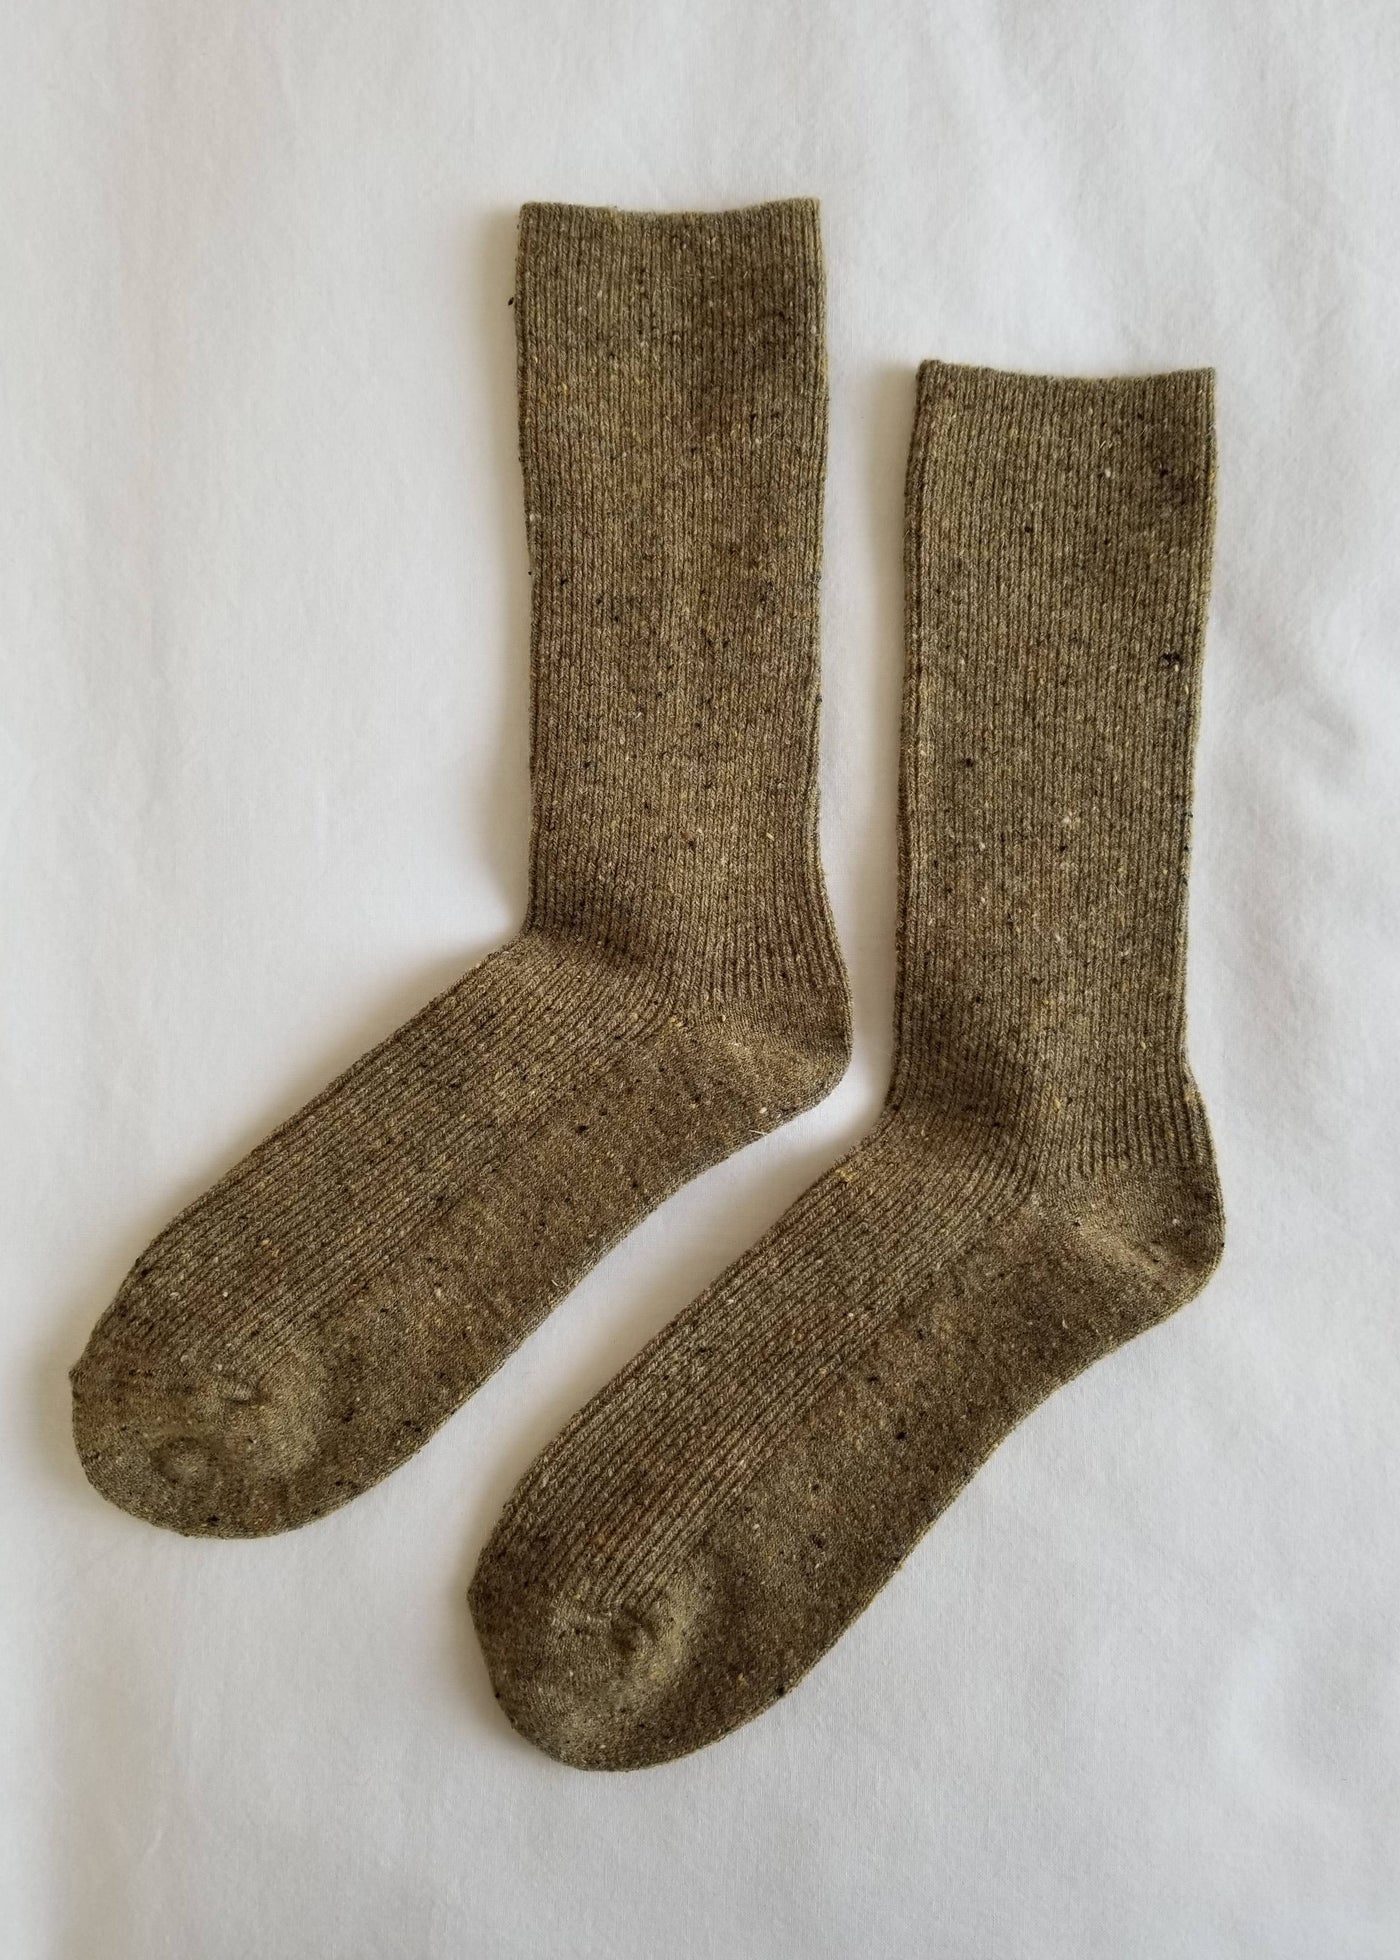 Snow Socks, Cedar